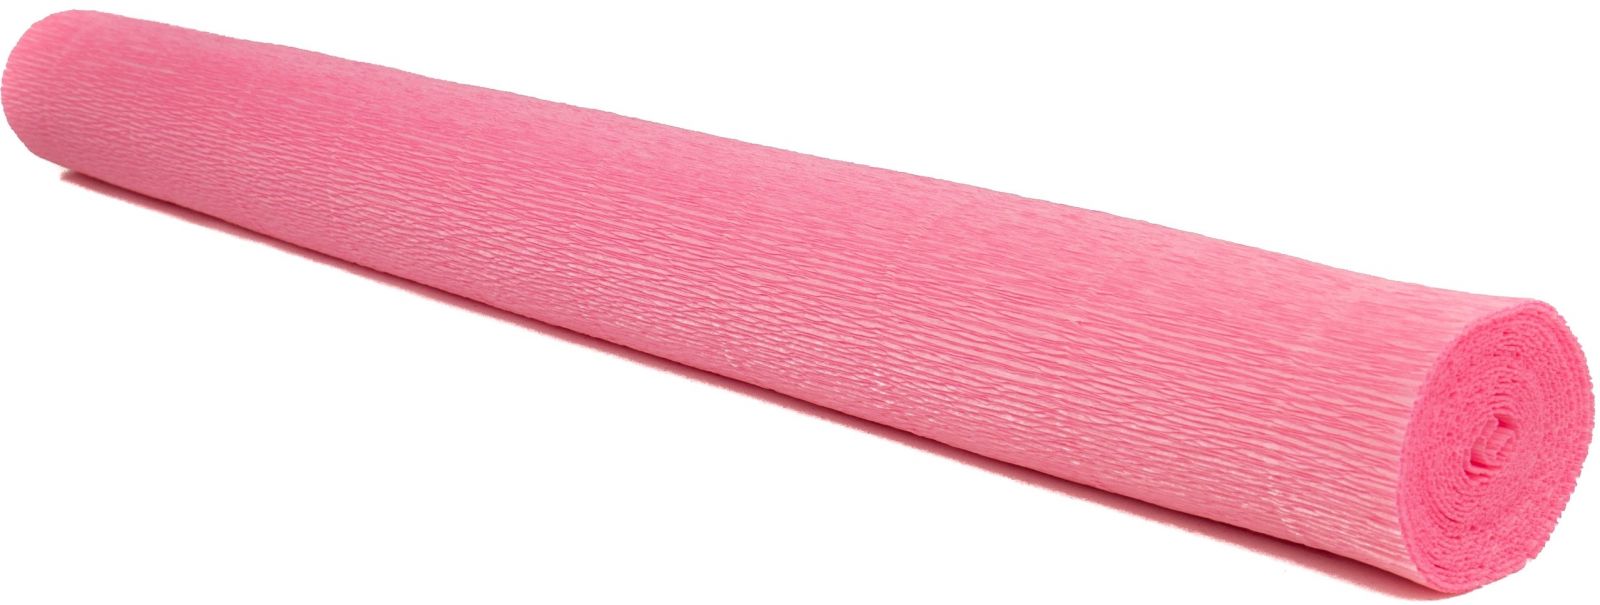 Krepový papír EXTRA pevný 180g, 50x200cm - k výrobě květů a jiné dekorace - Růžová